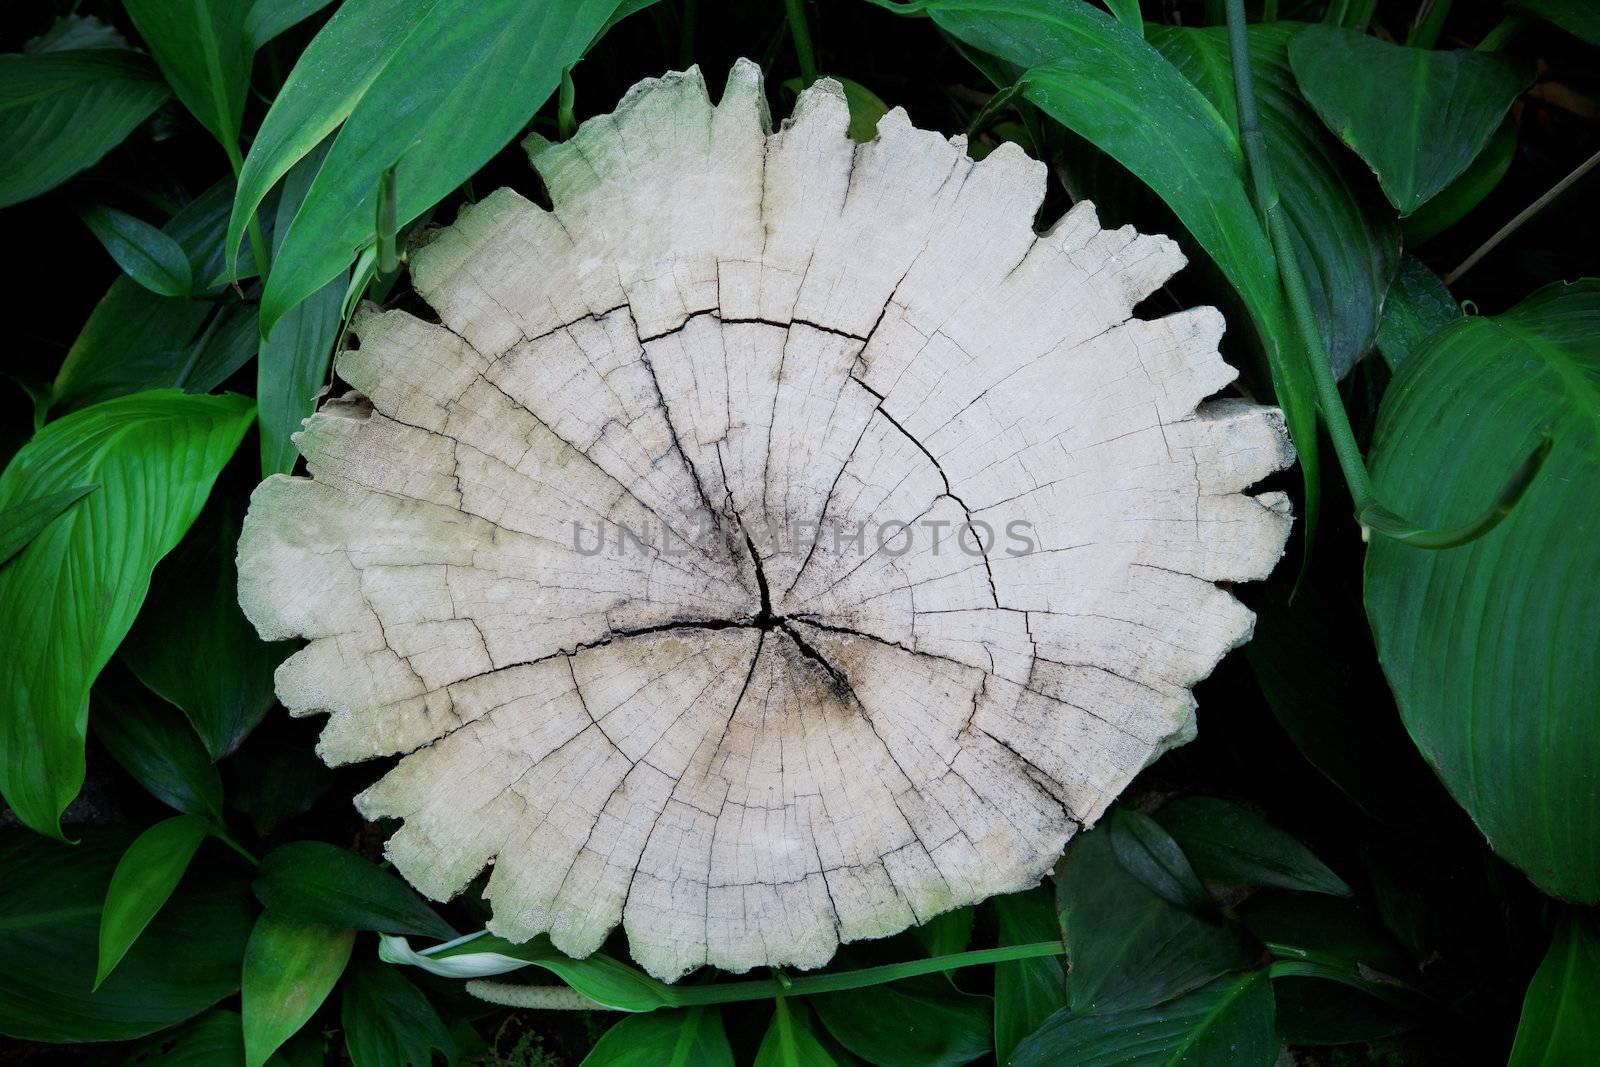 bark tree stump and green leaves of plant in garden for multipurpose